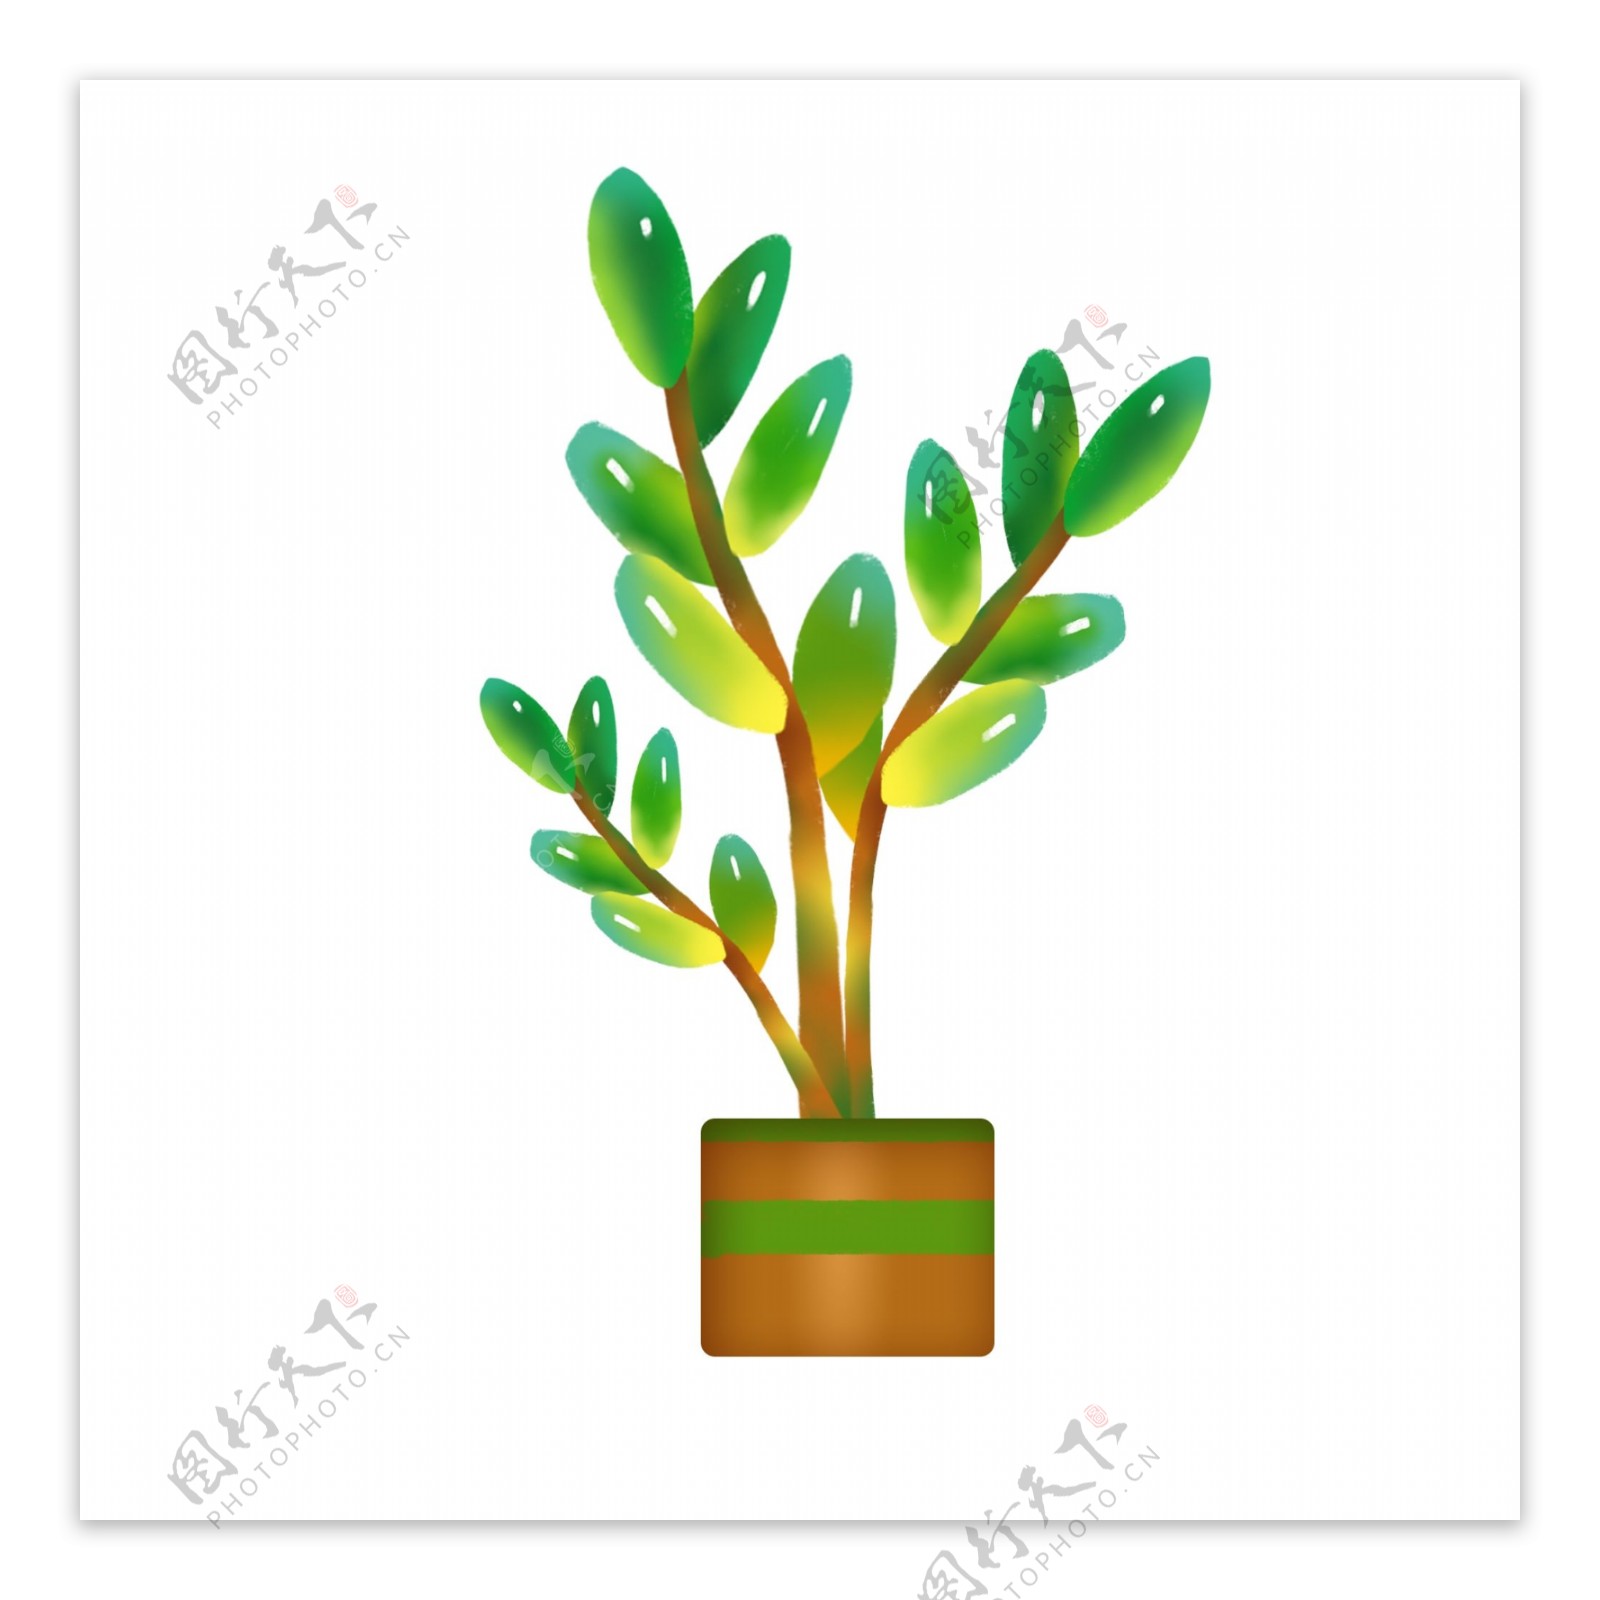 装饰绿色植物插画